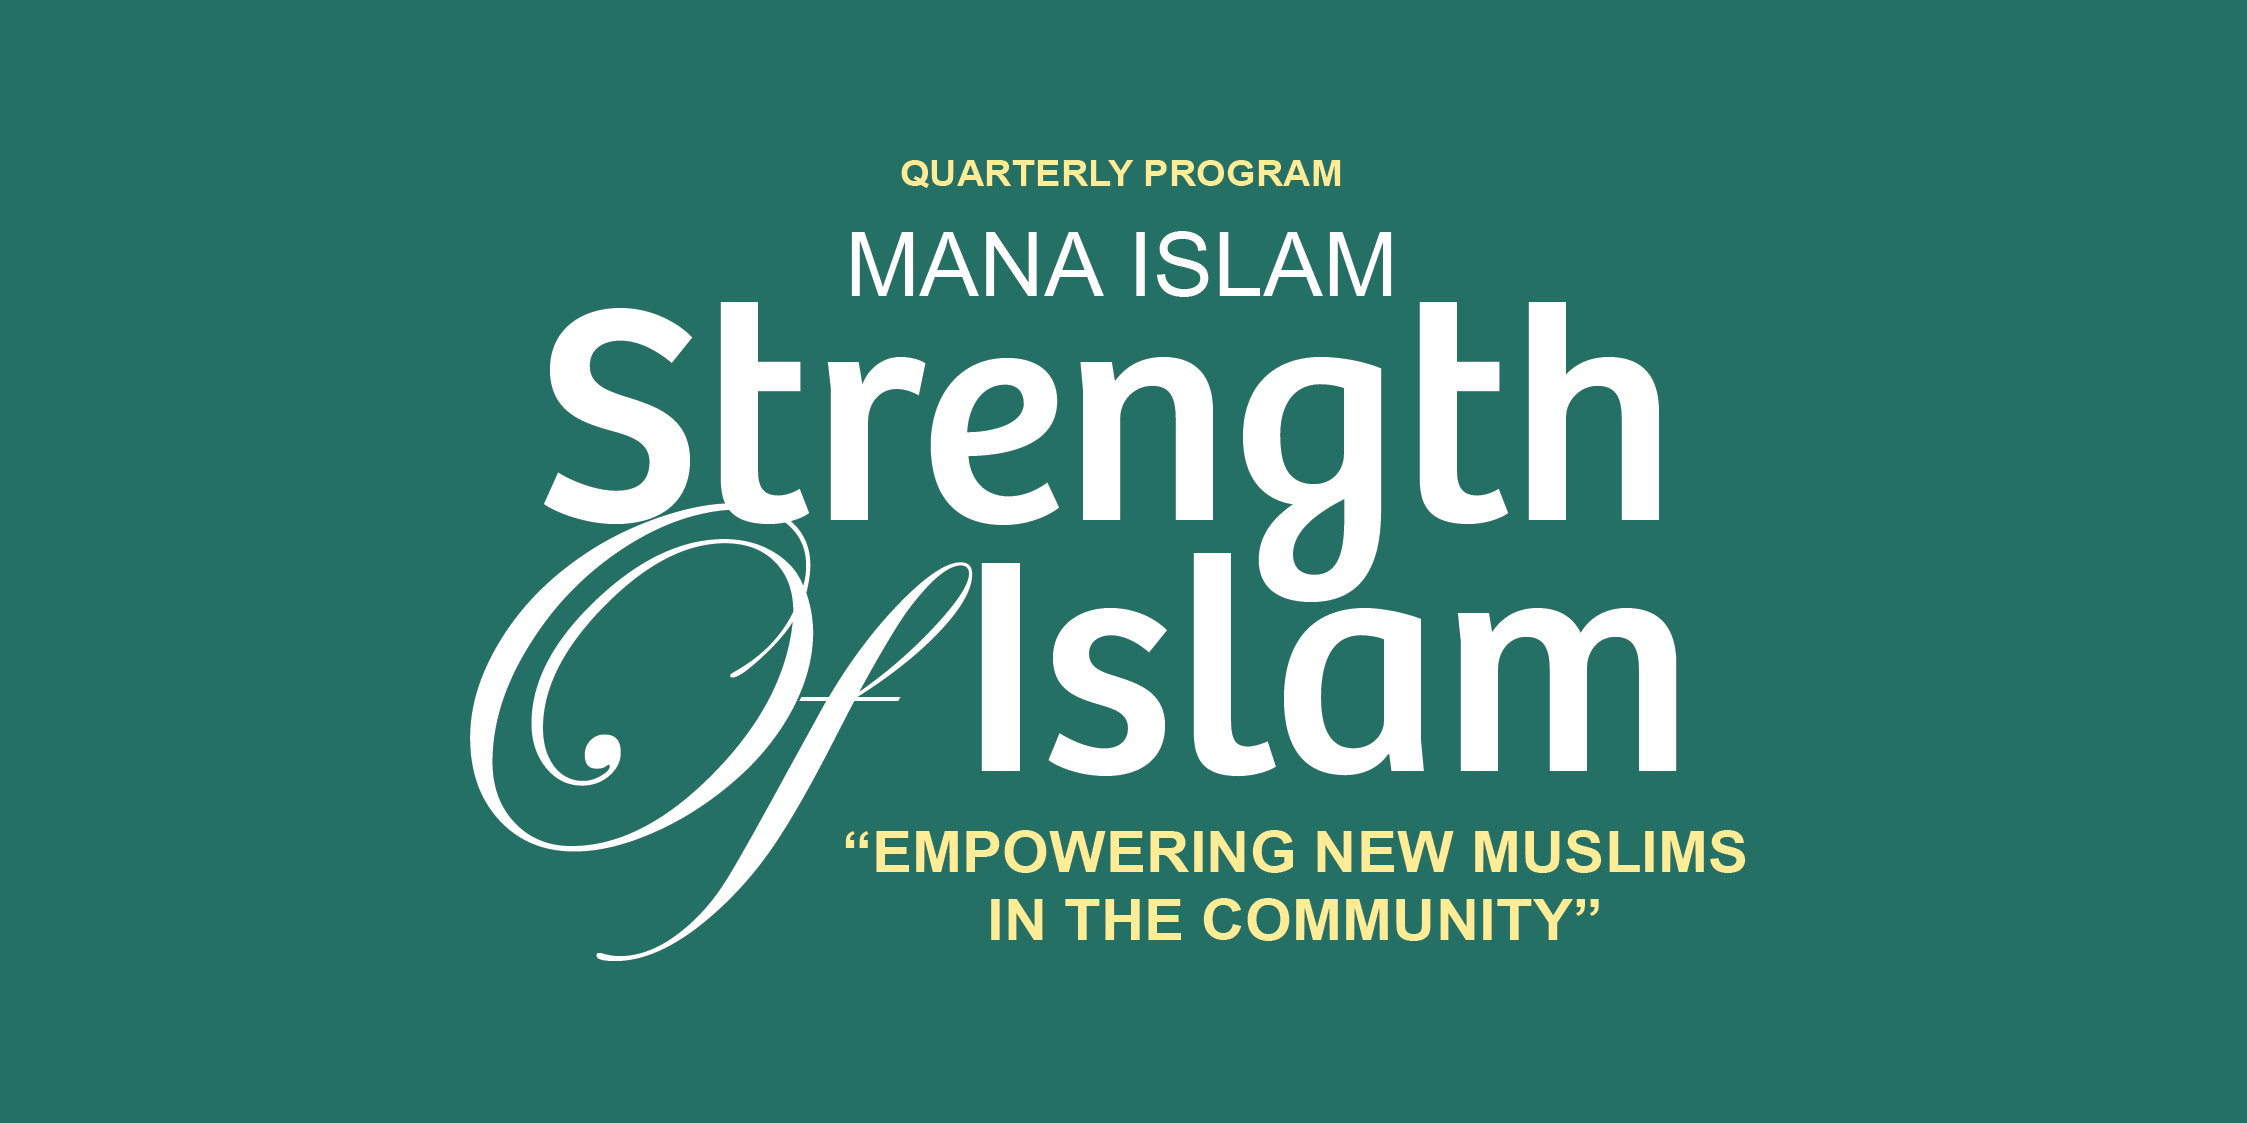 mana-islam_empowering-new-muslims_q1-2018